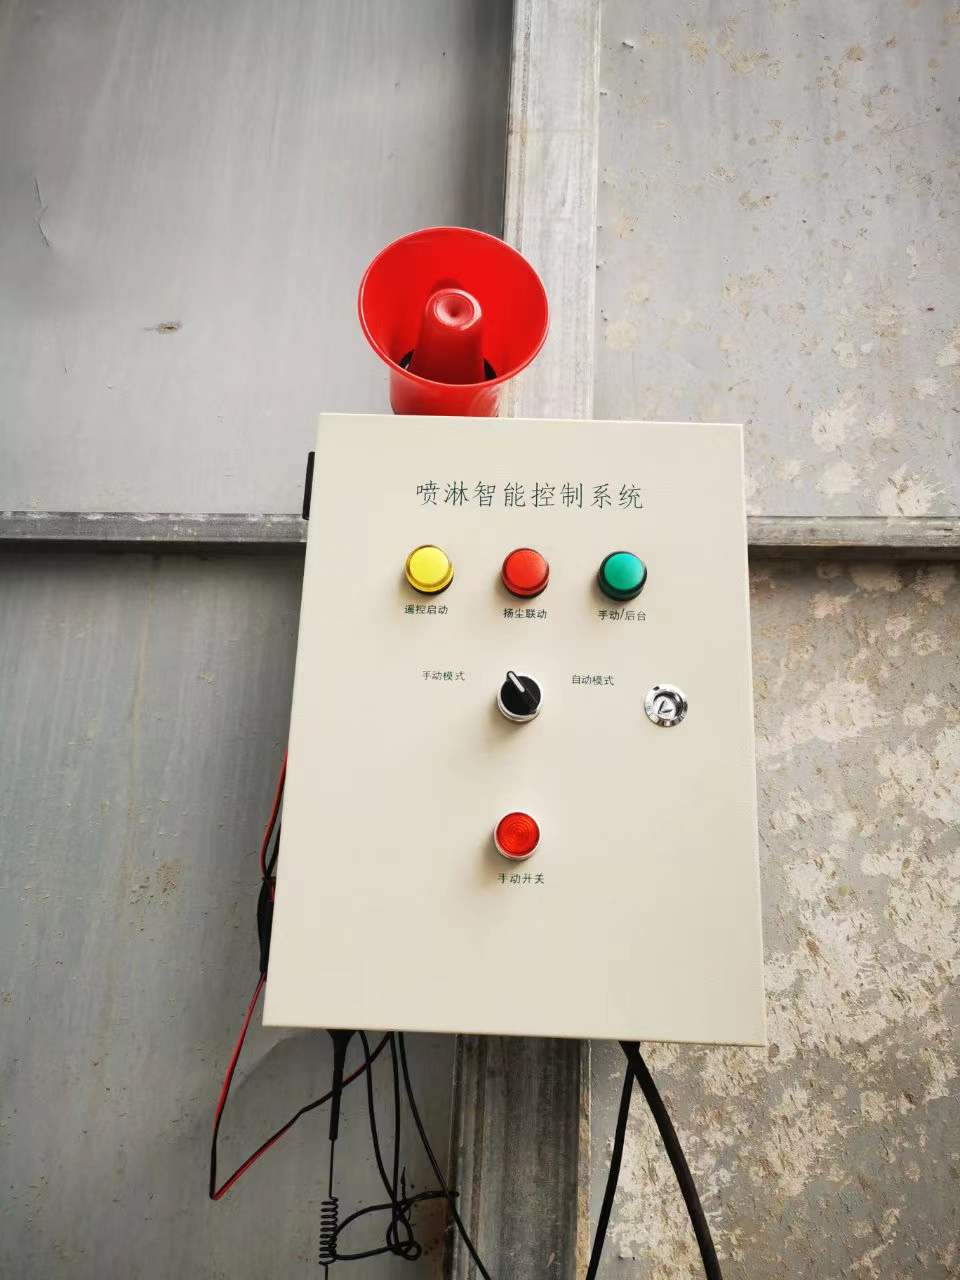 浙江远程联动控制系统价格 工地喷淋智能控制系统 安徽赛芙智能科技有限公司